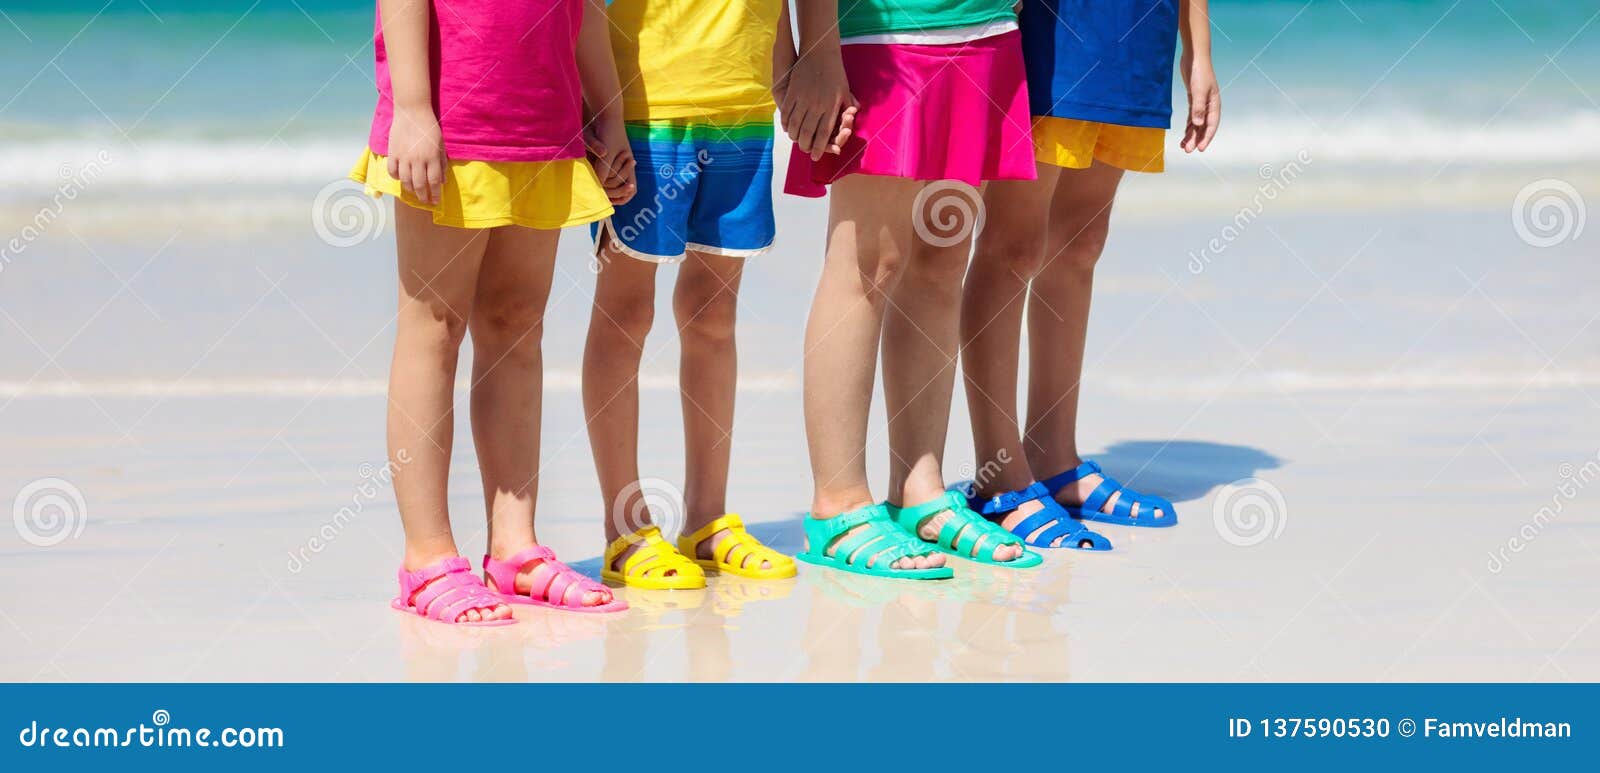 Zapatos De La Playa De Los Niños Calzado Del Mar Del Verano De Los Niños Foto archivo - Imagen de caucho, colorido: 137590530